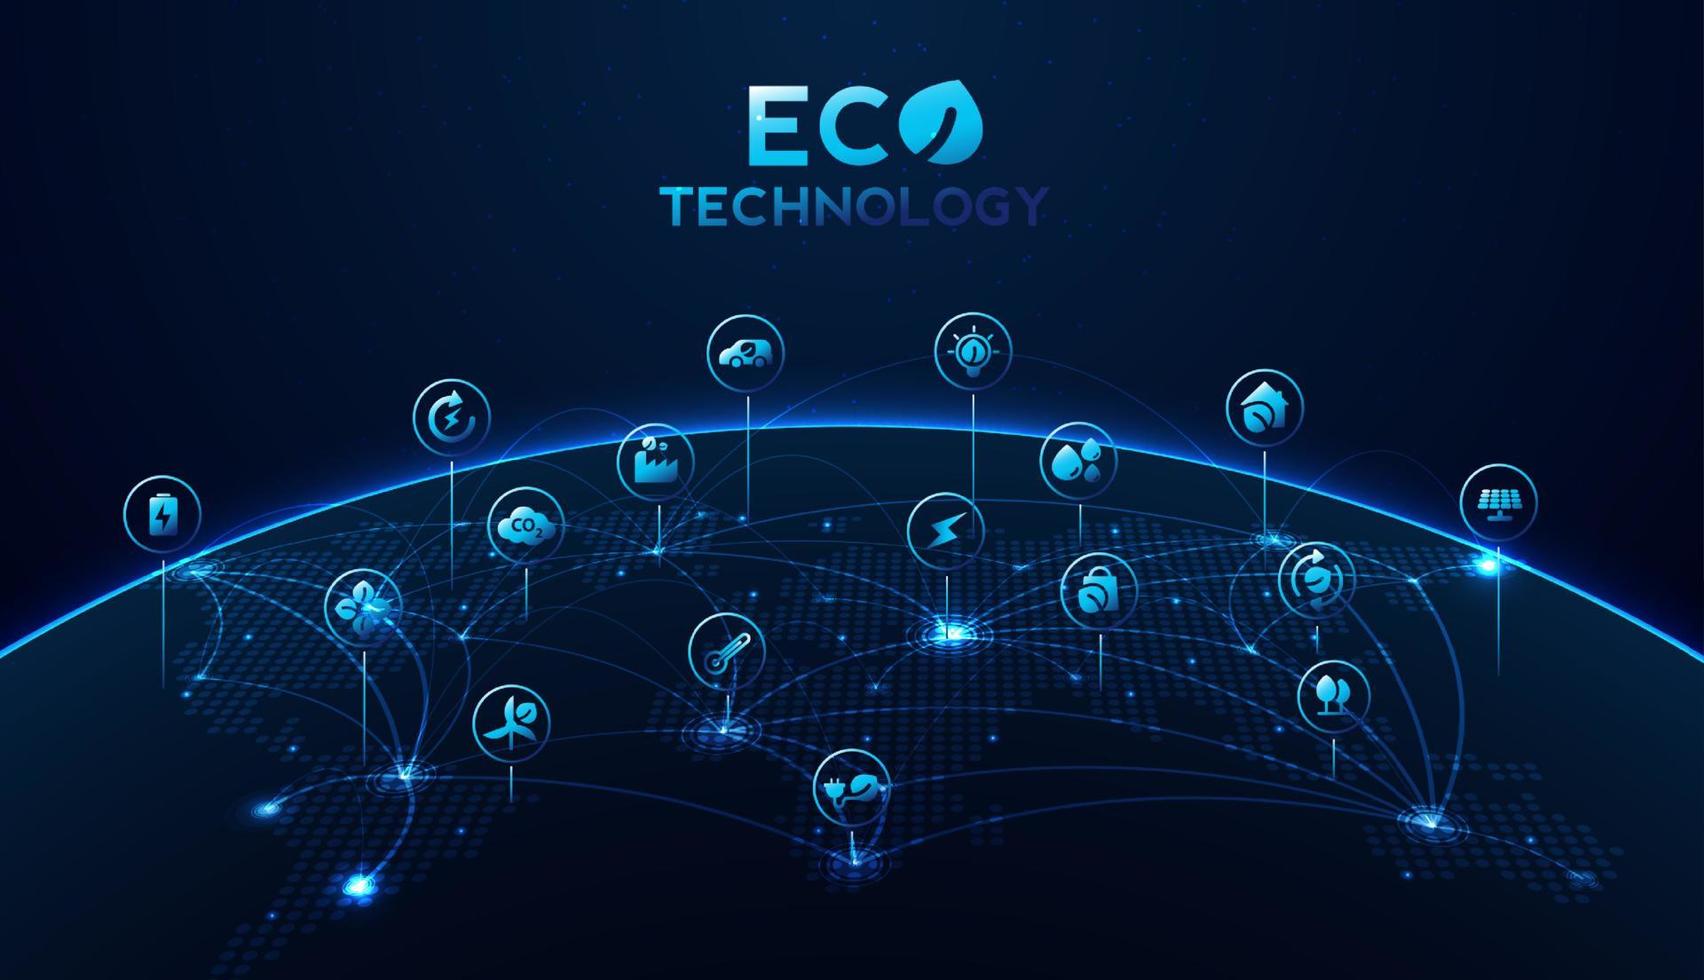 technologie écologique ou concept de technologie environnementale avec des icônes d'environnement sur la connexion réseau. conception de vecteur